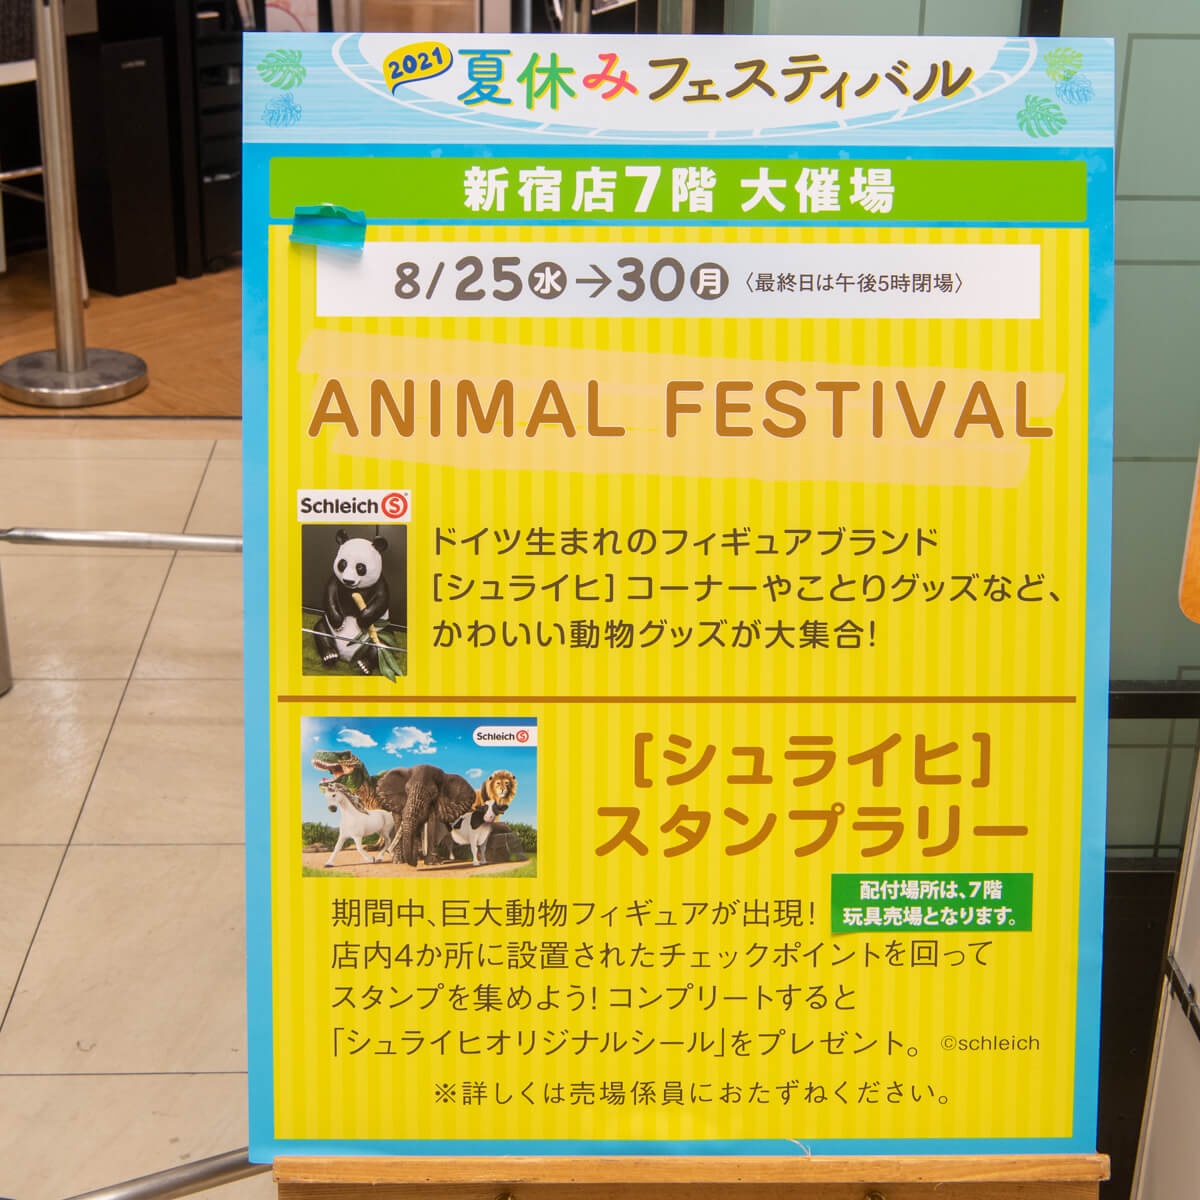 シュライヒ 京王百貨店新宿店「ANIMAL FESTIVAL」